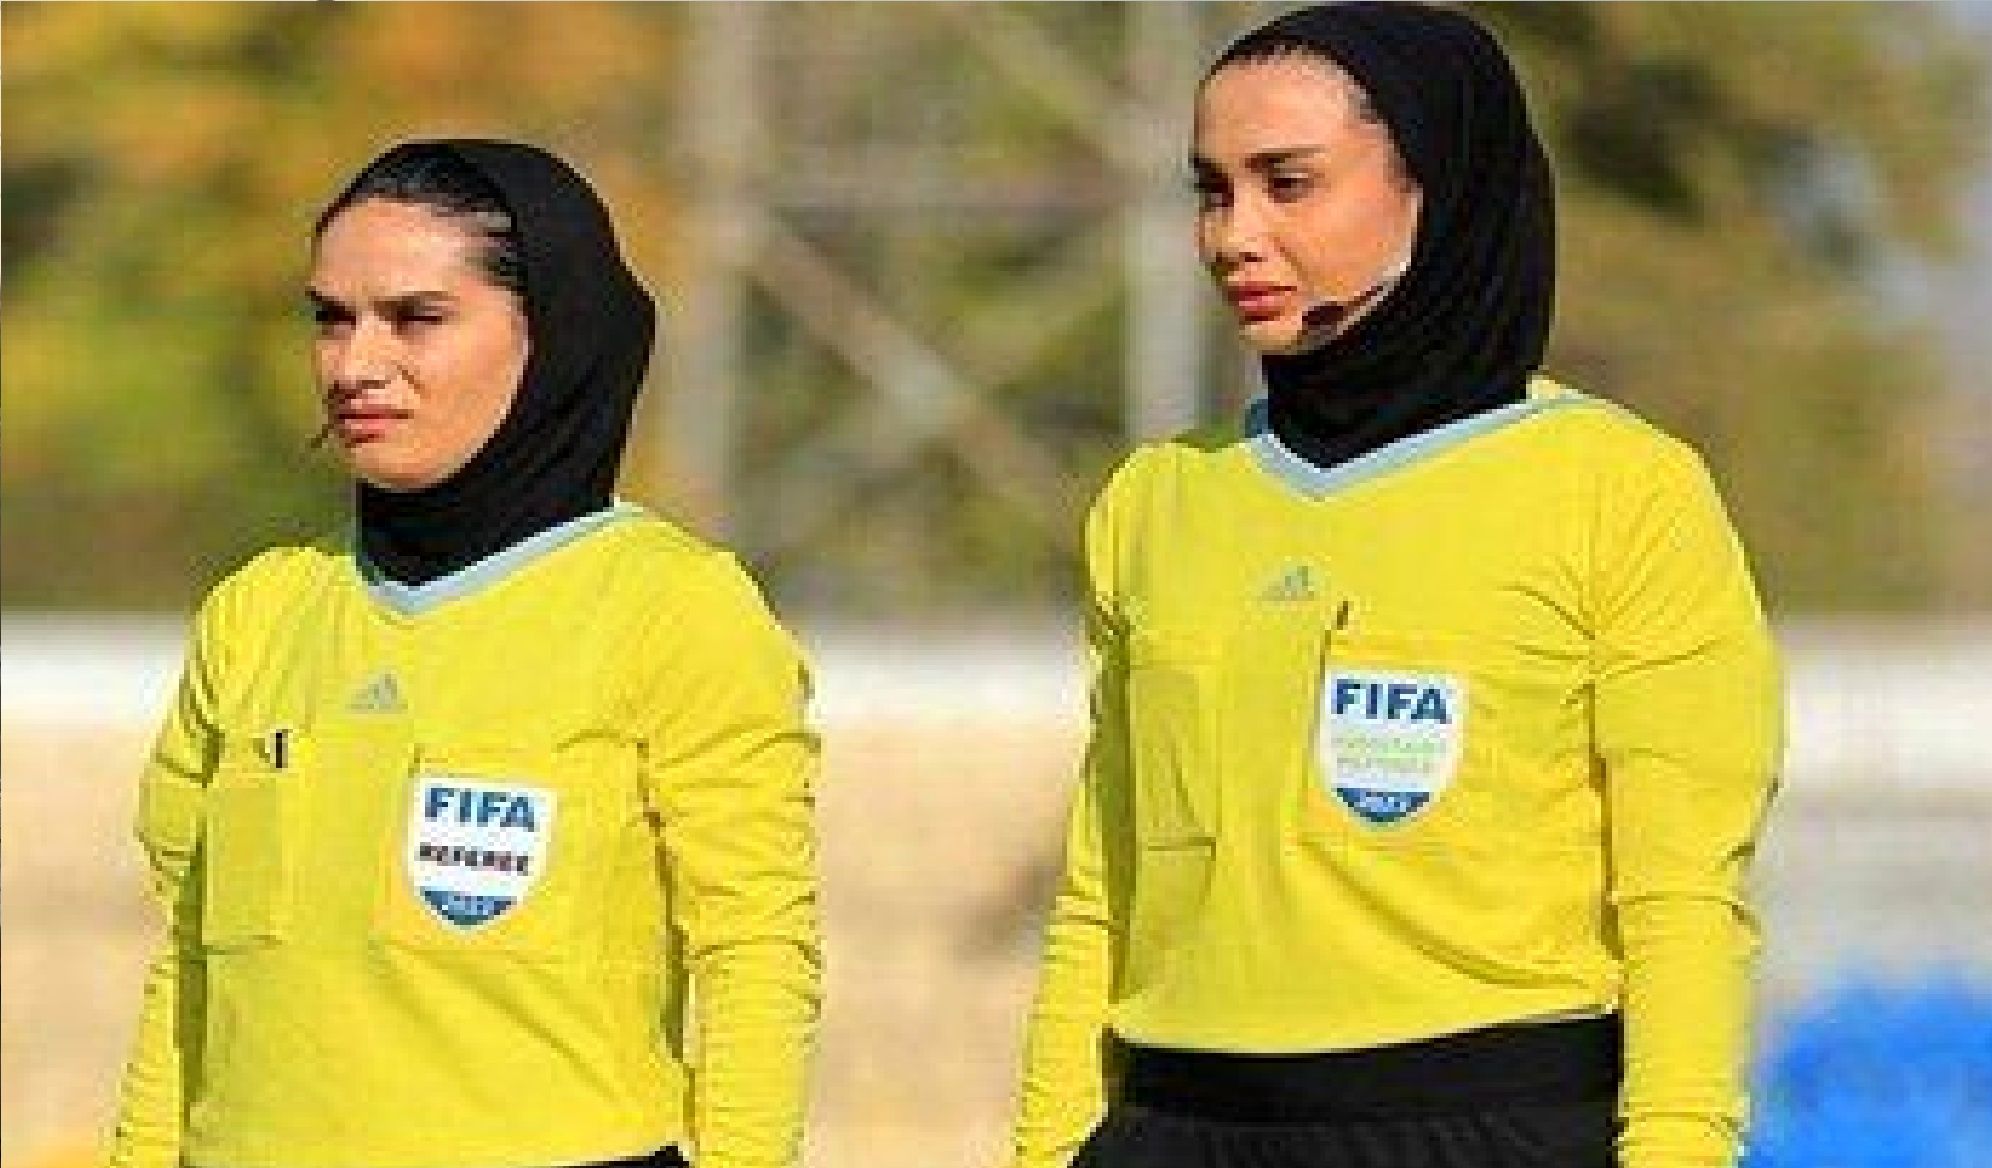  داوران زن ایرانی در جام جهانی درخشیدند